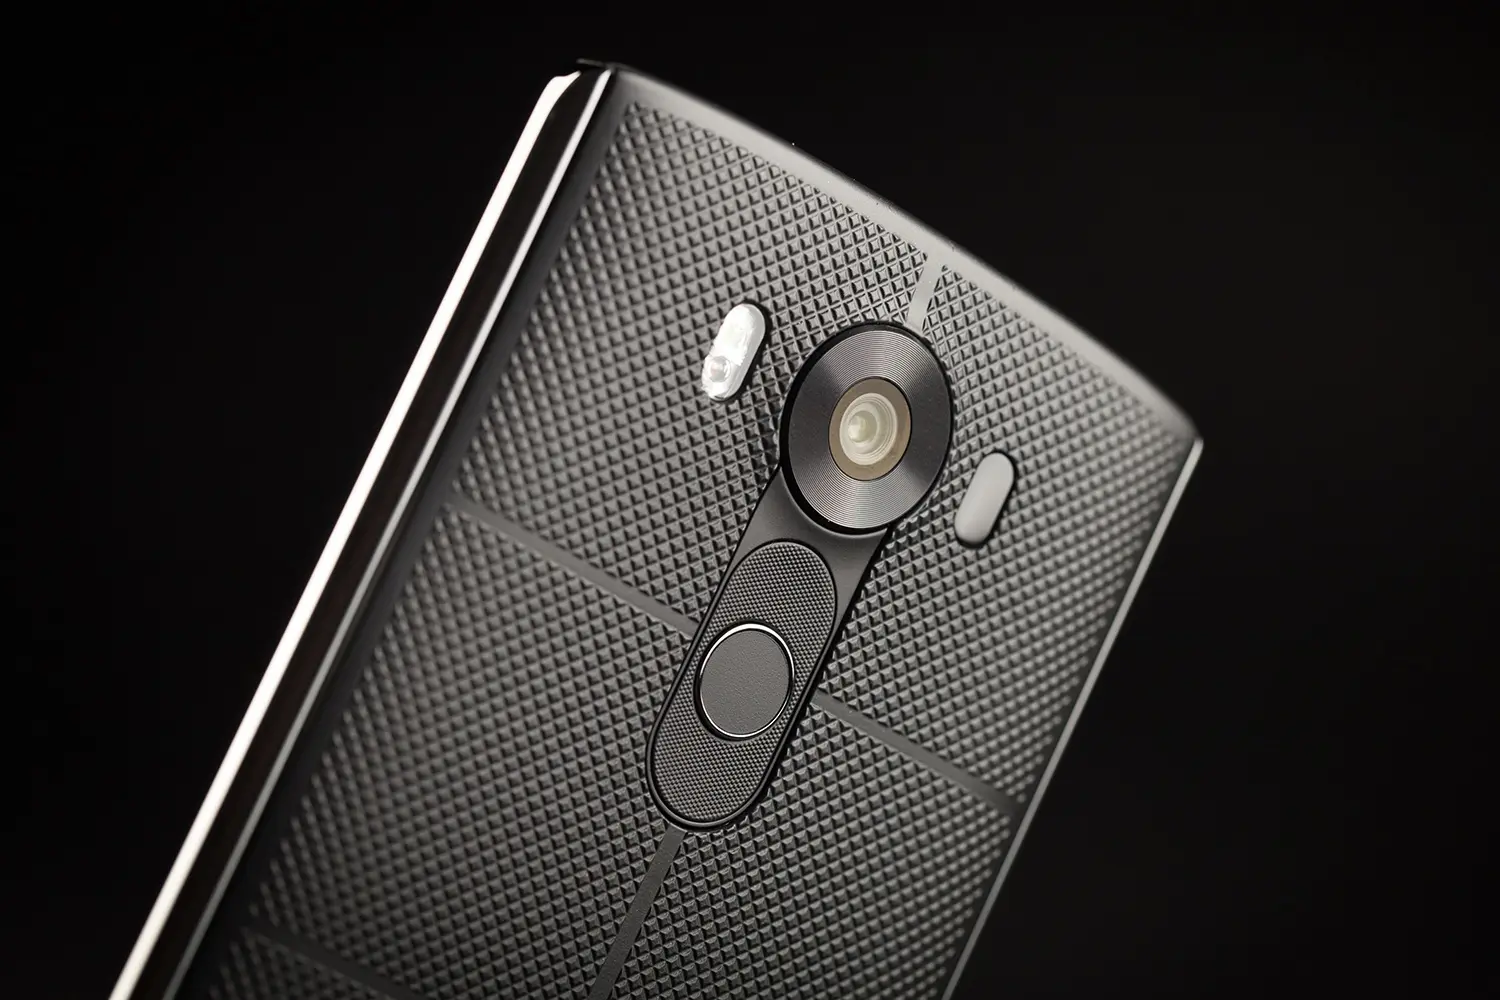 LG V20 vendrá con un Snapdragon 820 y 4,000 mAh